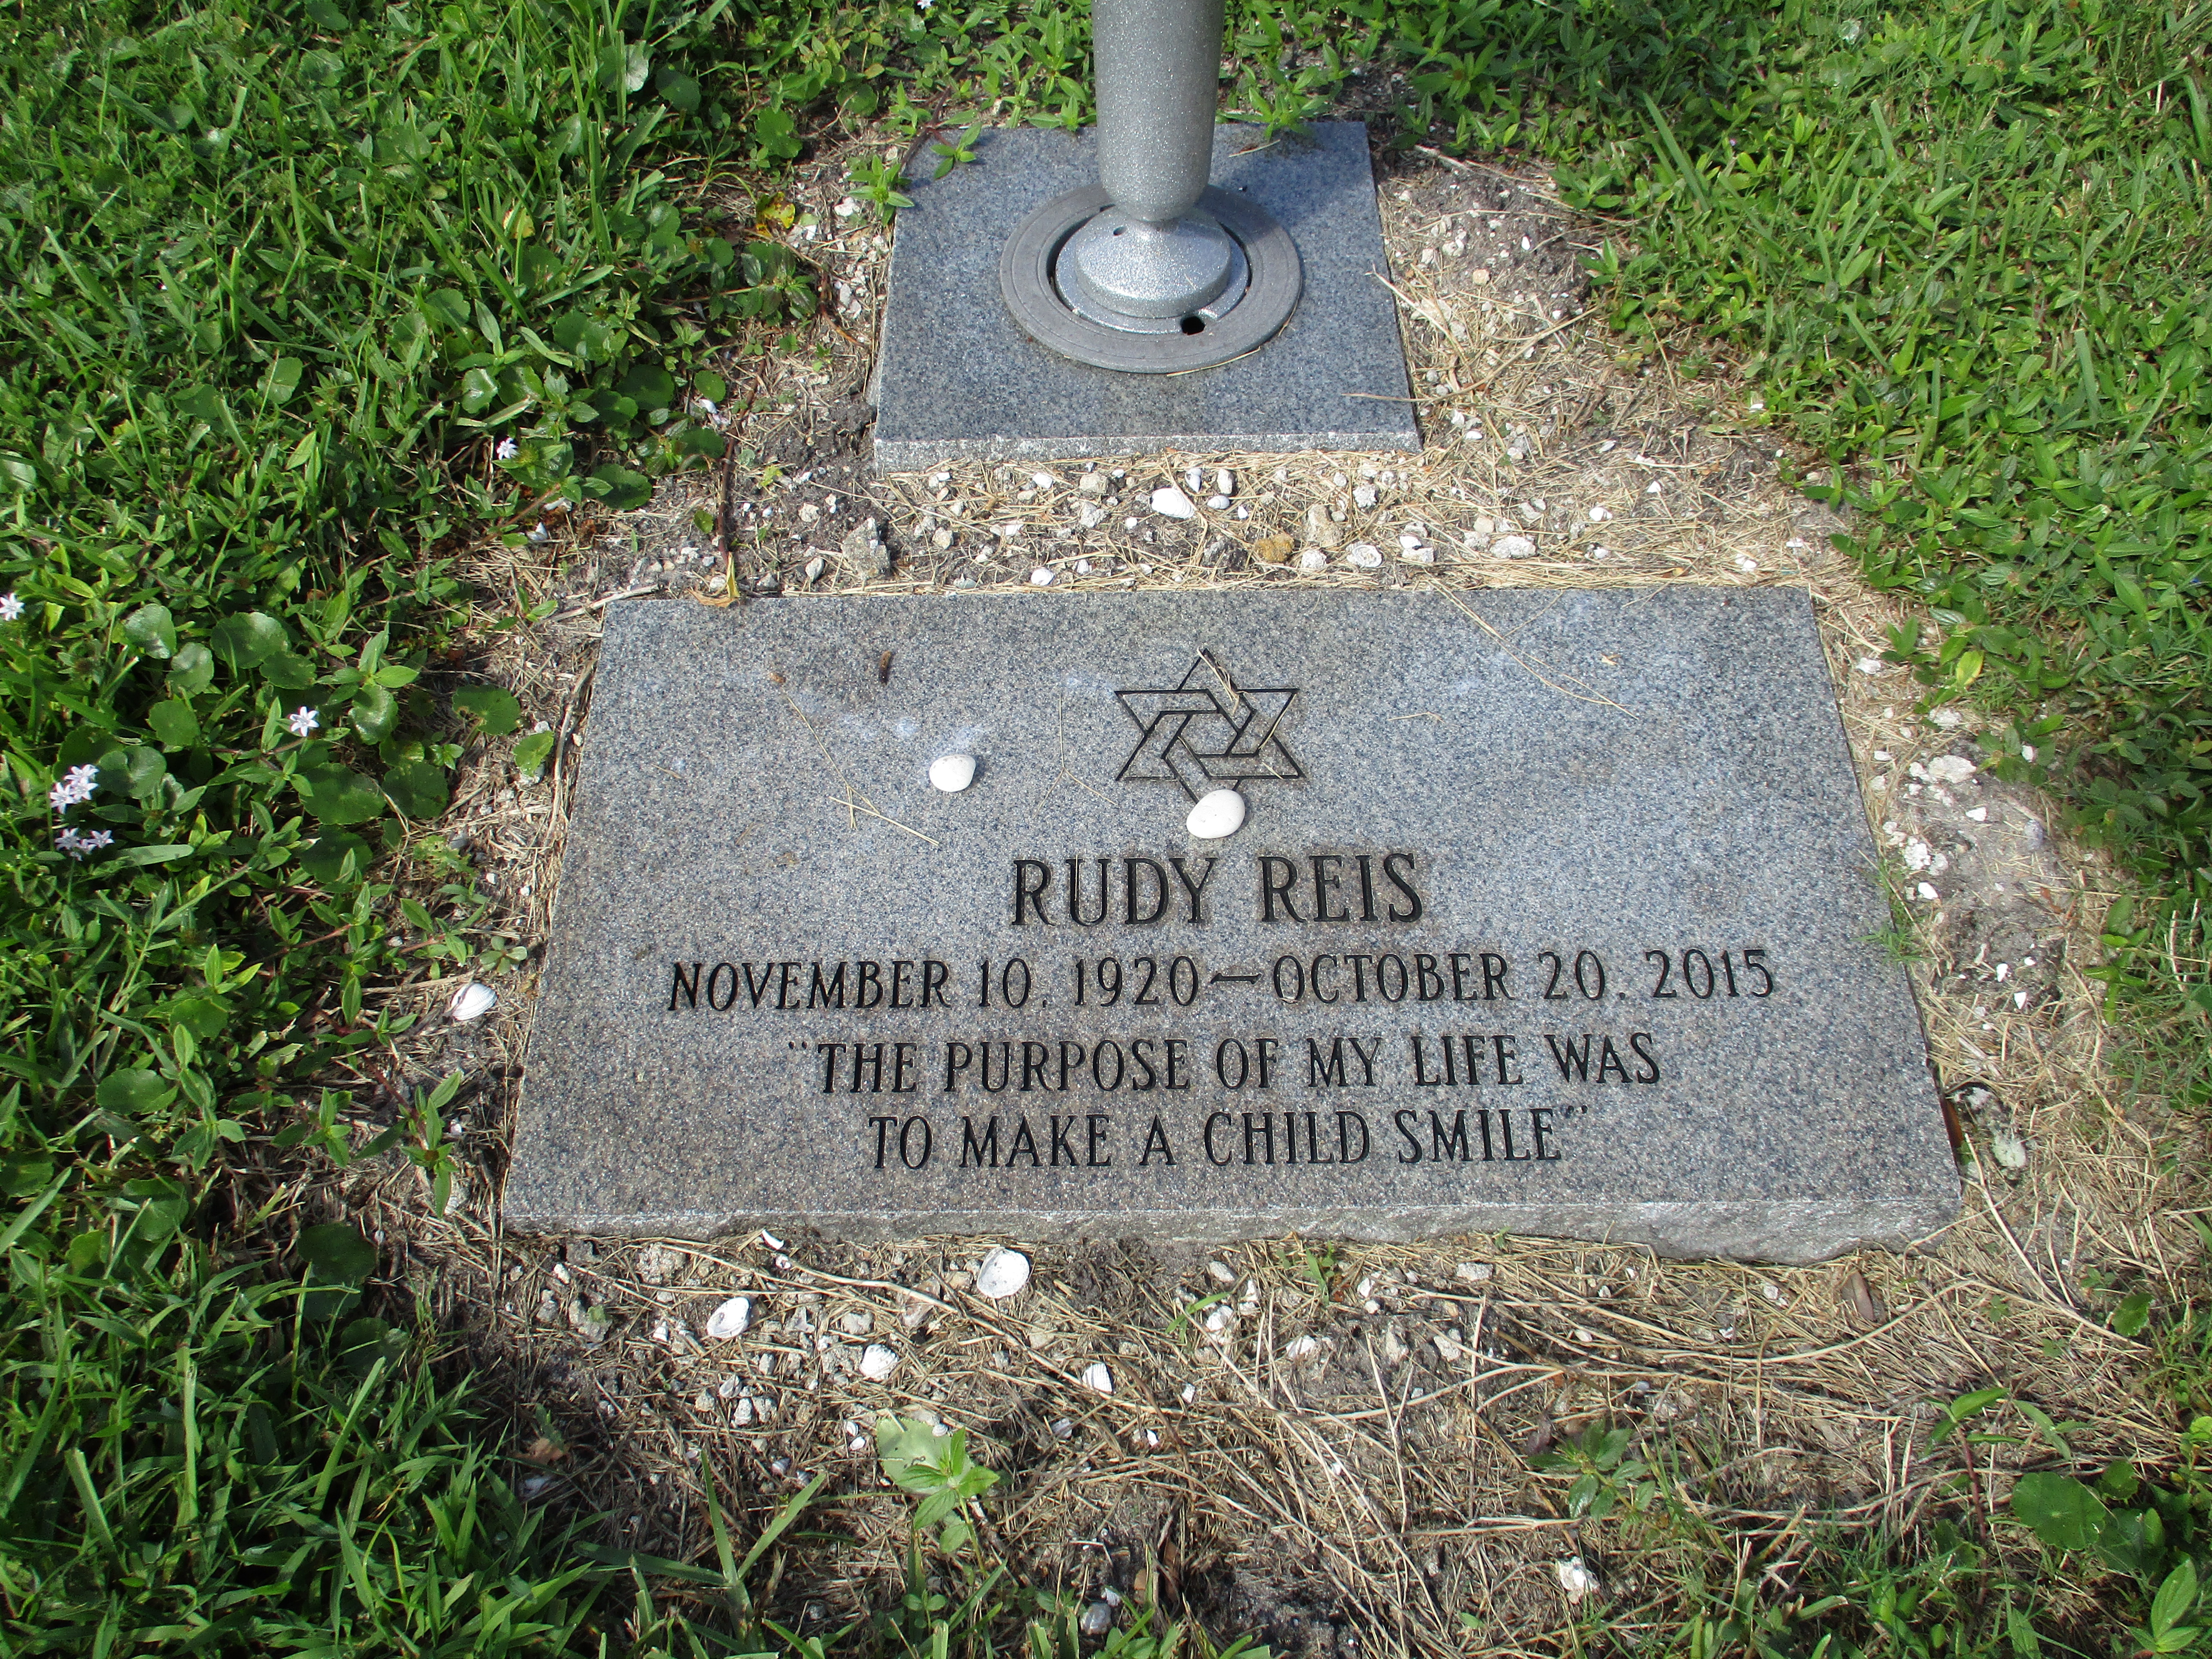 Rudy Reis